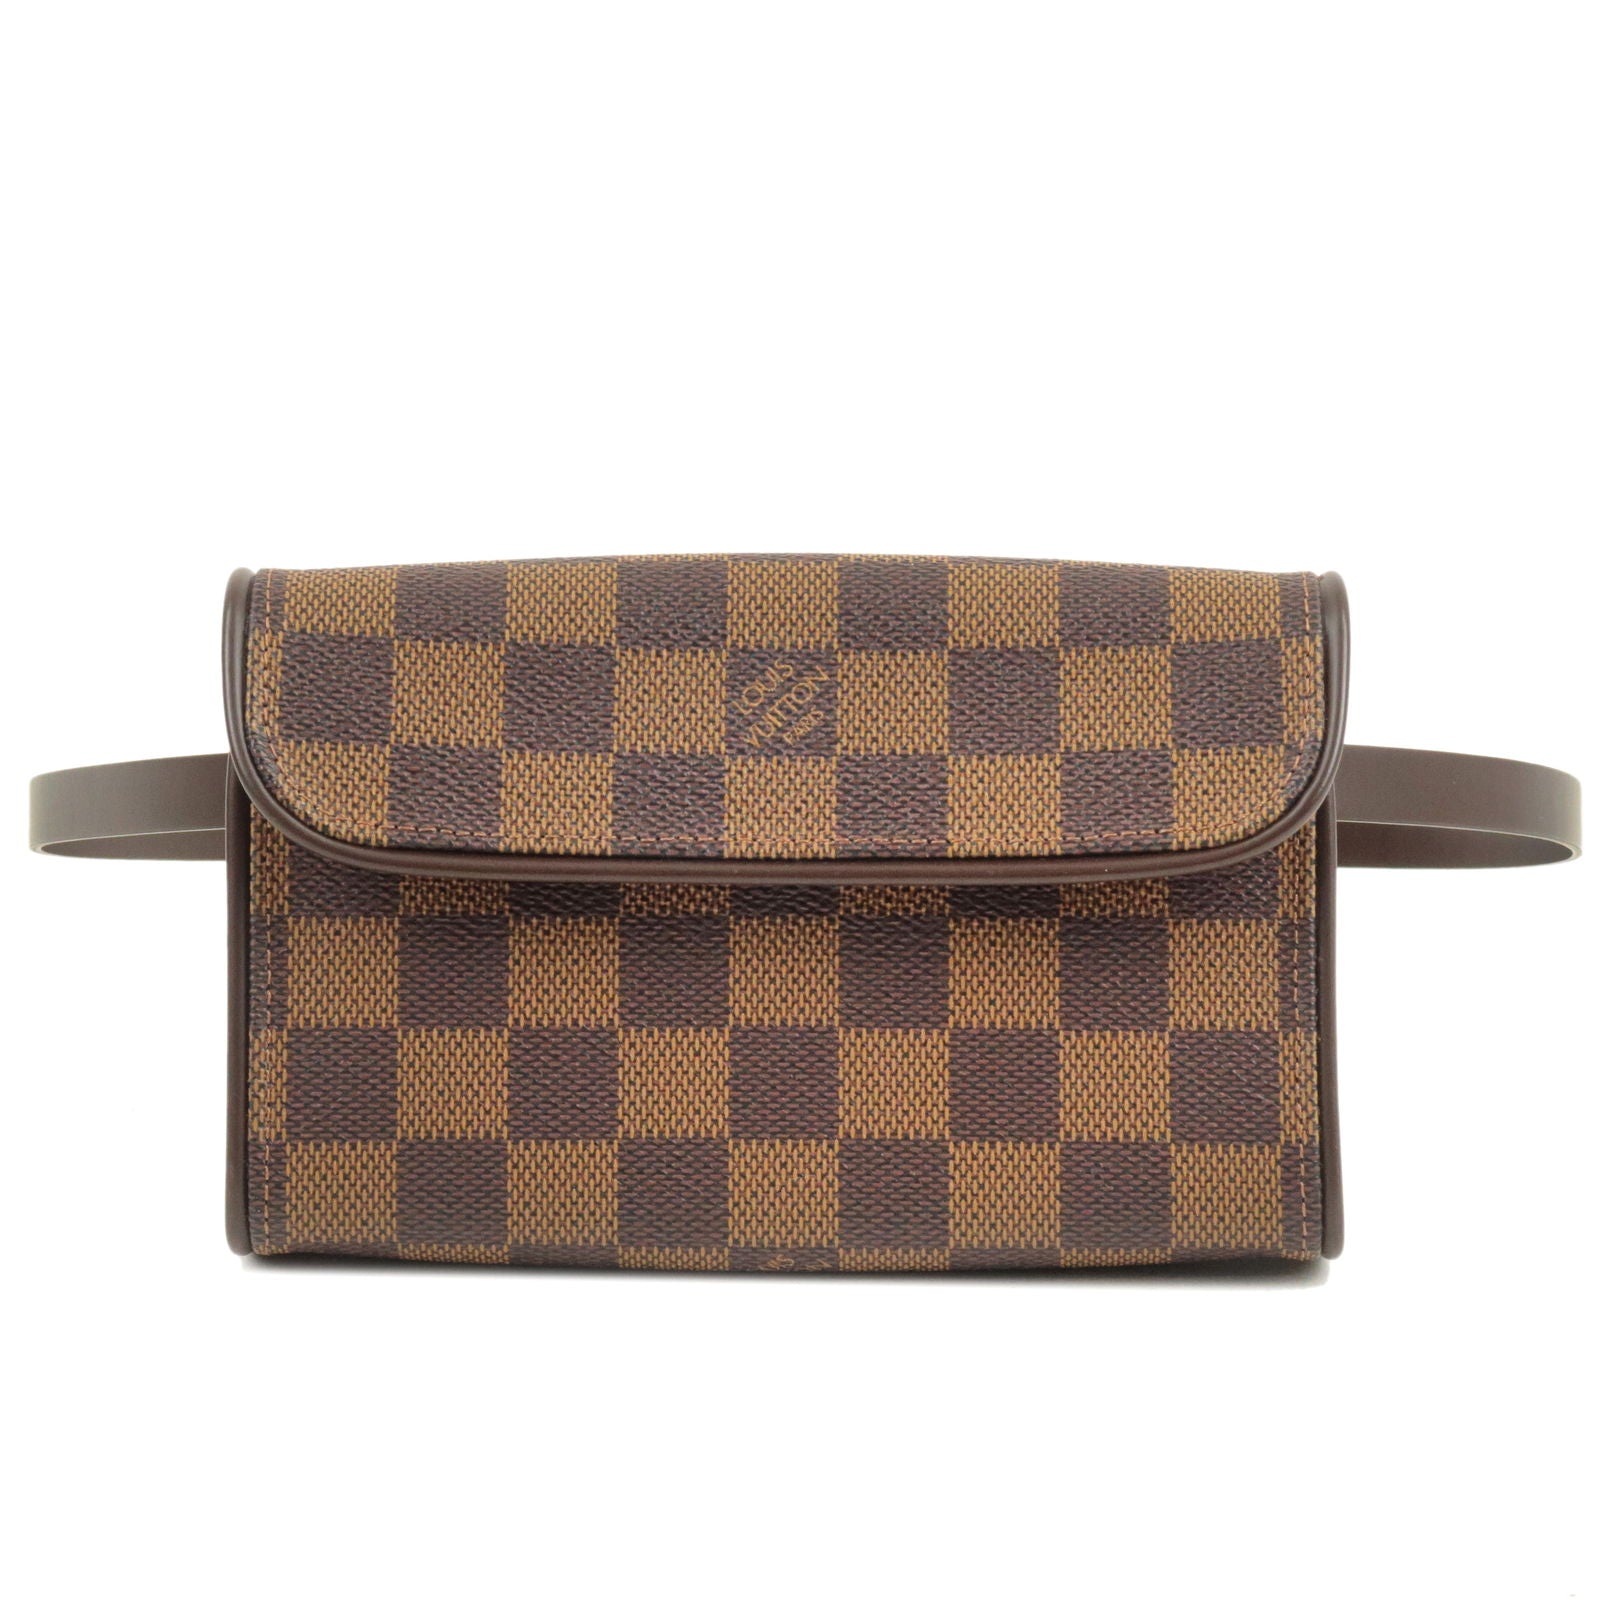 Authentic Louis Vuitton Damier Ebene Melville Bum Bag  Luxe Touch Luxury  Resale